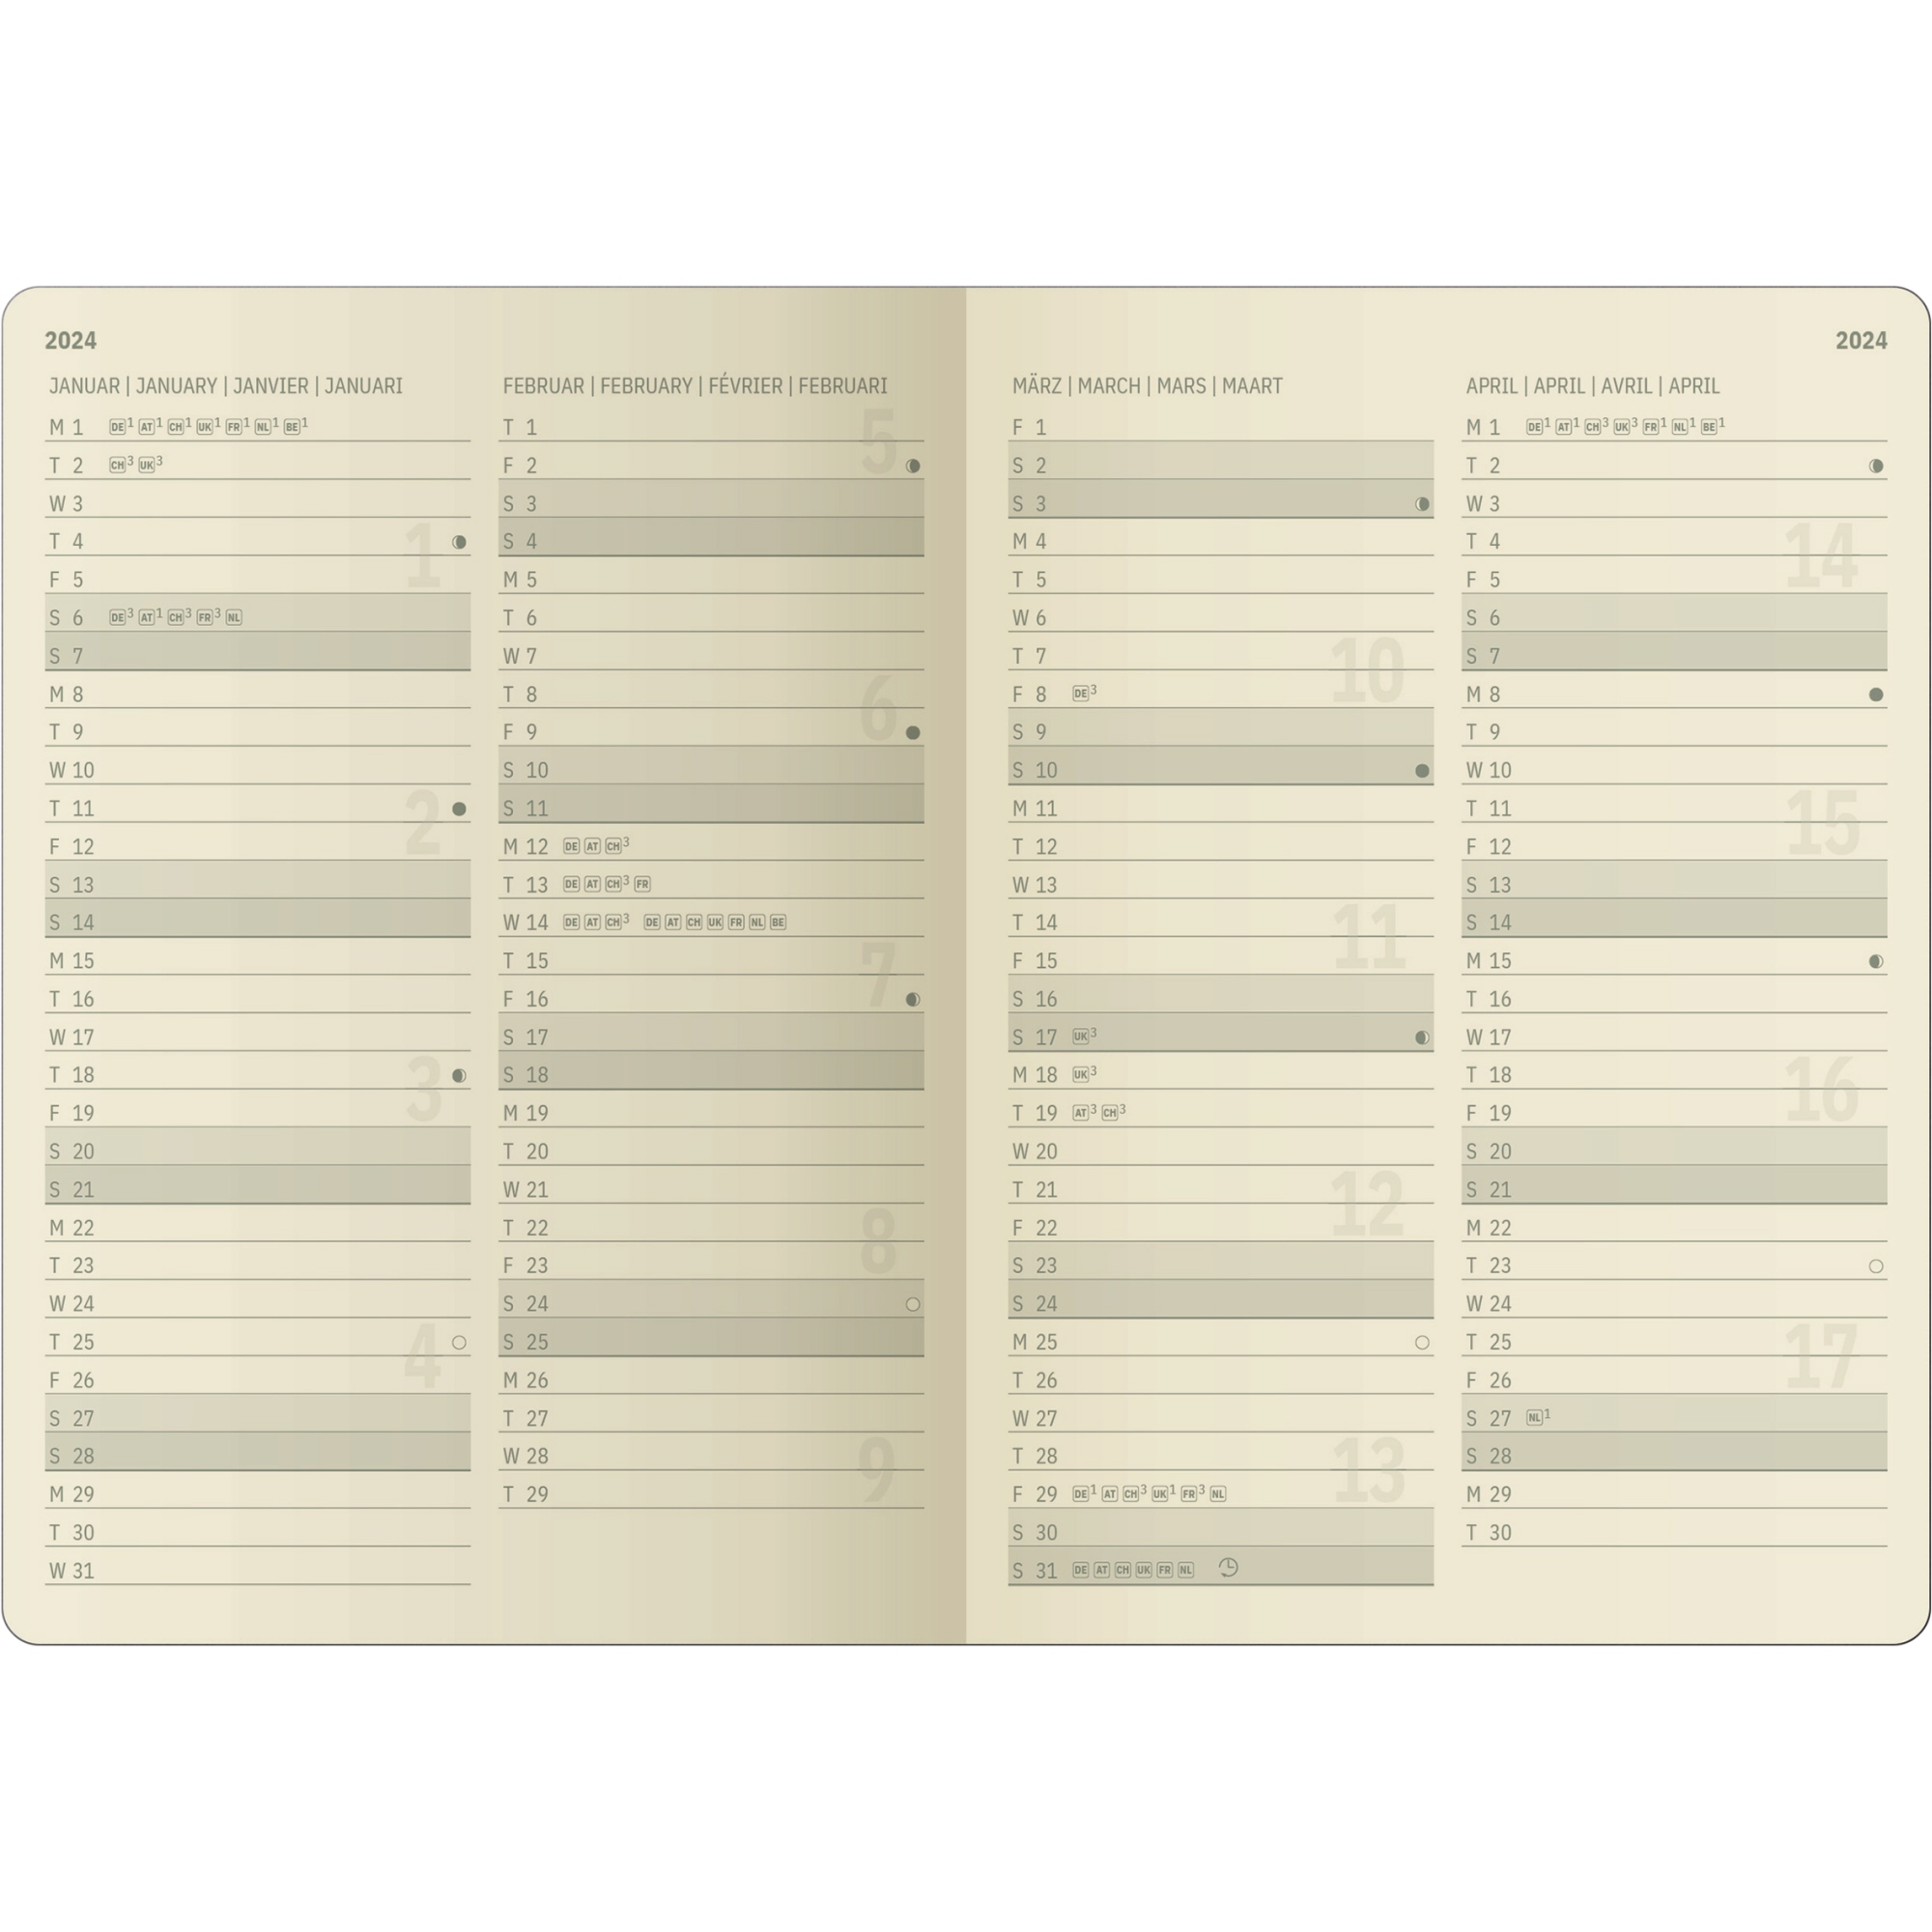 SIGEL Buchkalender CONCEPTUM® DIN A5 2024 Hardcover Softwave blau